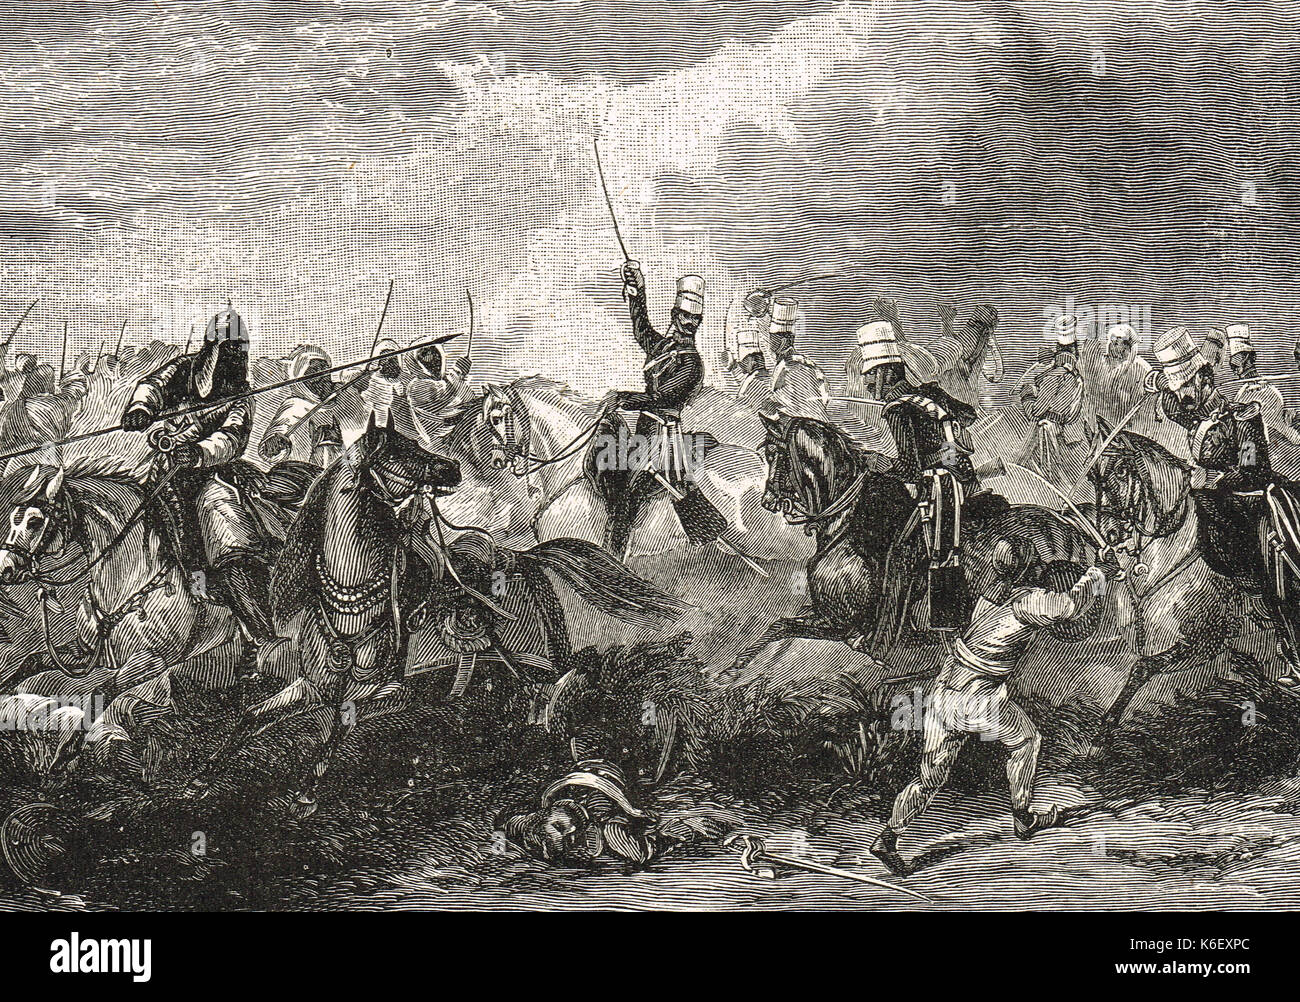 Battaglia di chilianwala, la carica del terzo re della propria luce dragoni, gennaio 1849, seconda anglo-guerra sikh Punjab, India Foto Stock